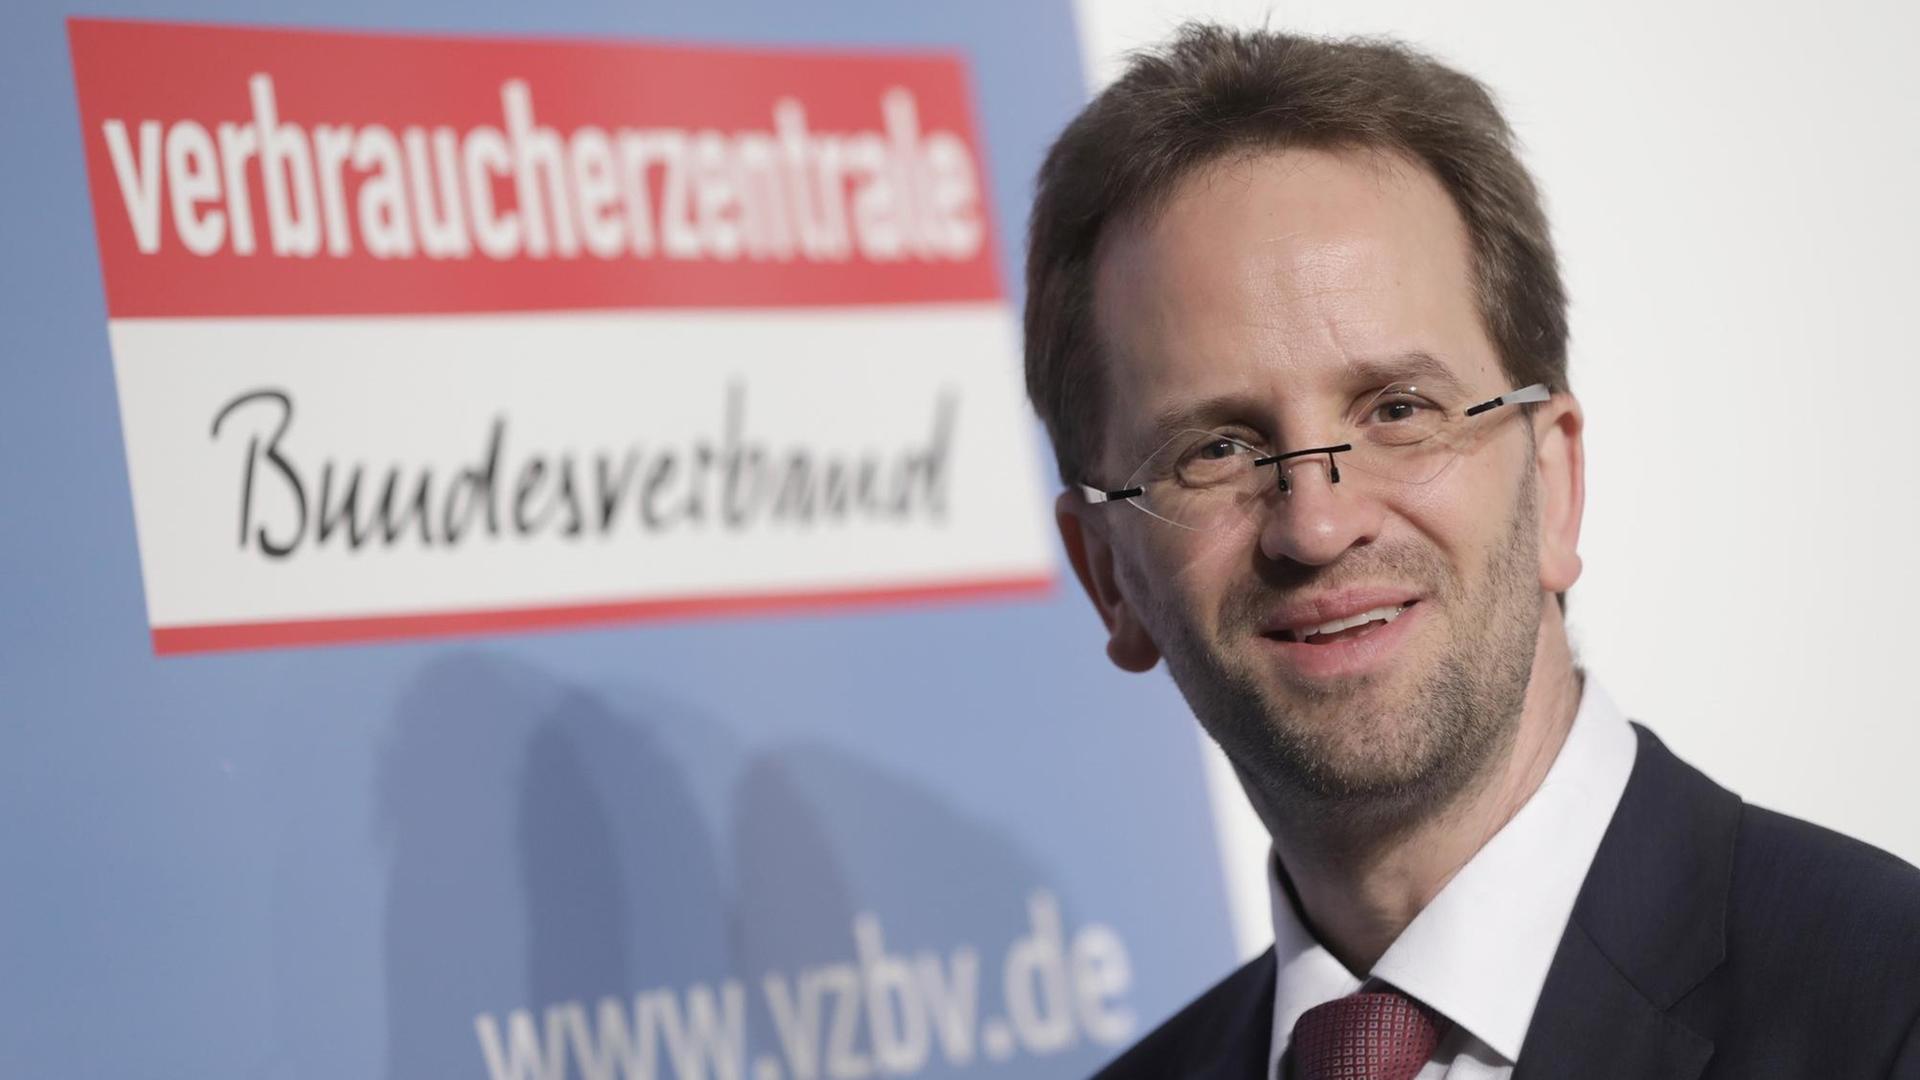 Klaus Müller vom Verbraucherzentrale Bundesverband